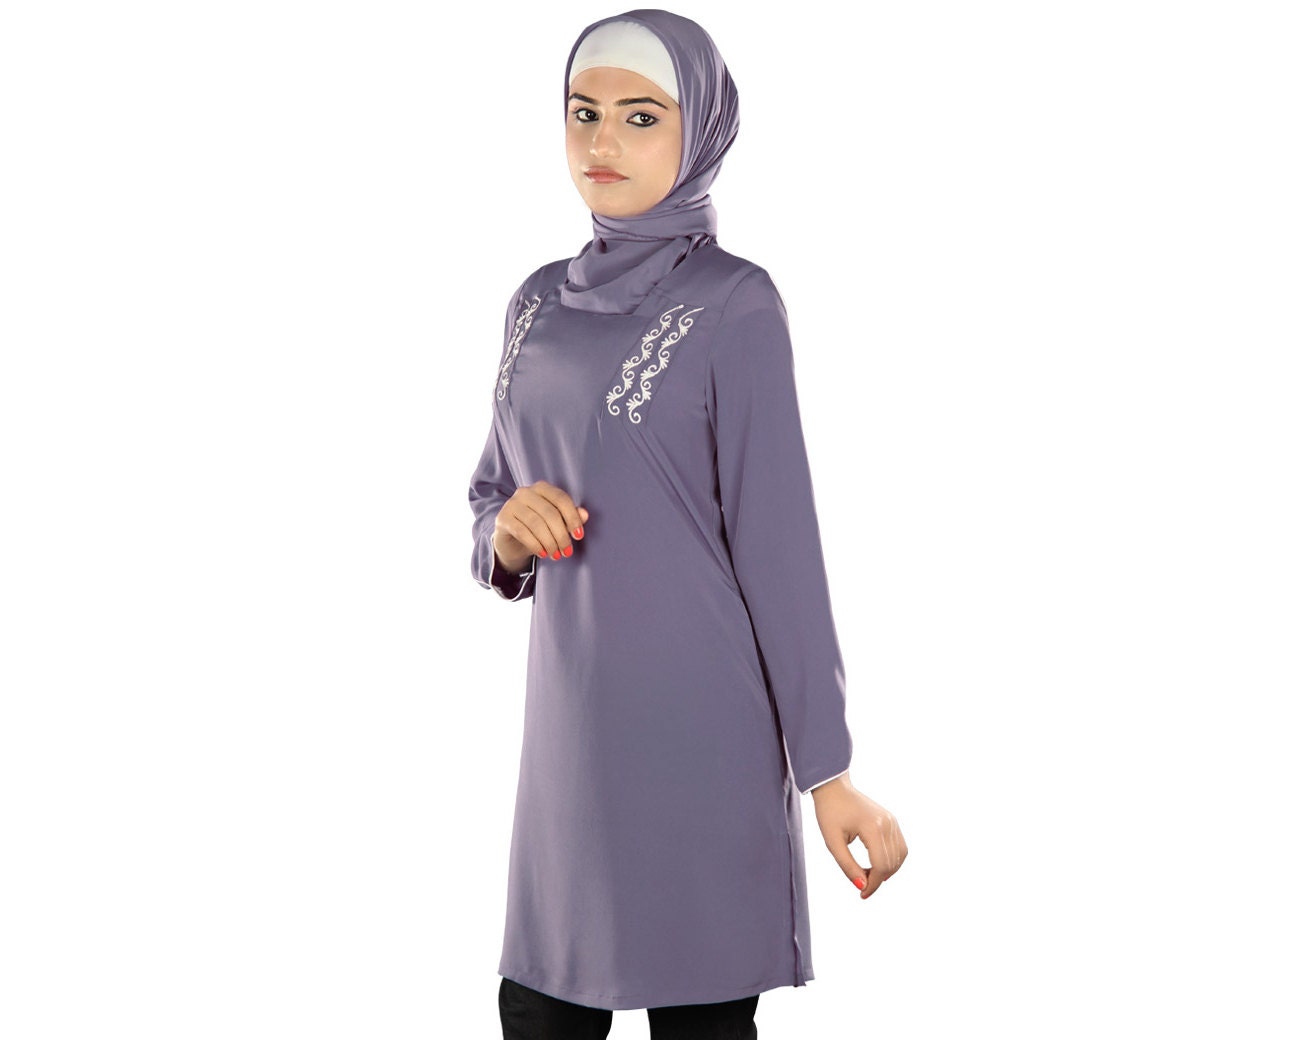 Одежда для мусульманских женщин интернет. Amina shop мусульманская одежда. Мусульманская одежда для женщин. Мусульманские костюмы для женщин. Туники для мусульманок.